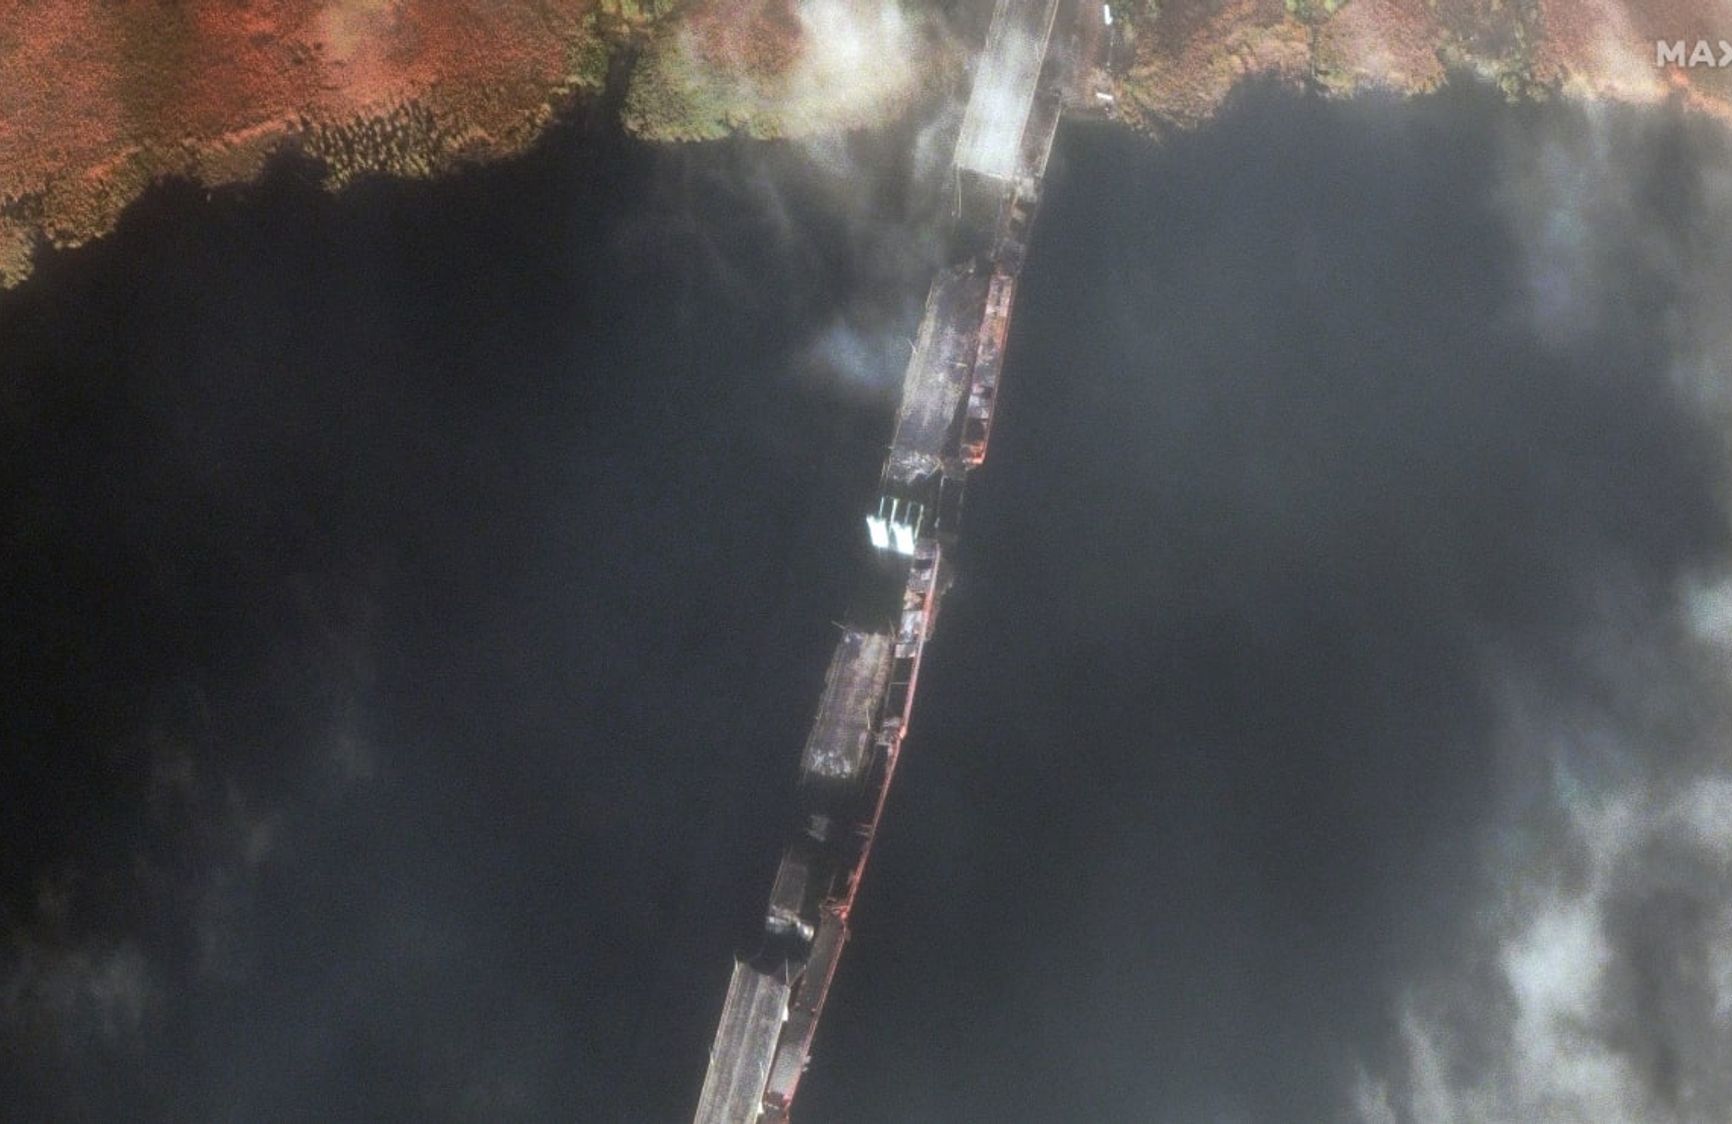 Херсон под контролем ВСУ, подрыв Антоновского моста, в Крыму роют окопы. Что происходит на линии фронта